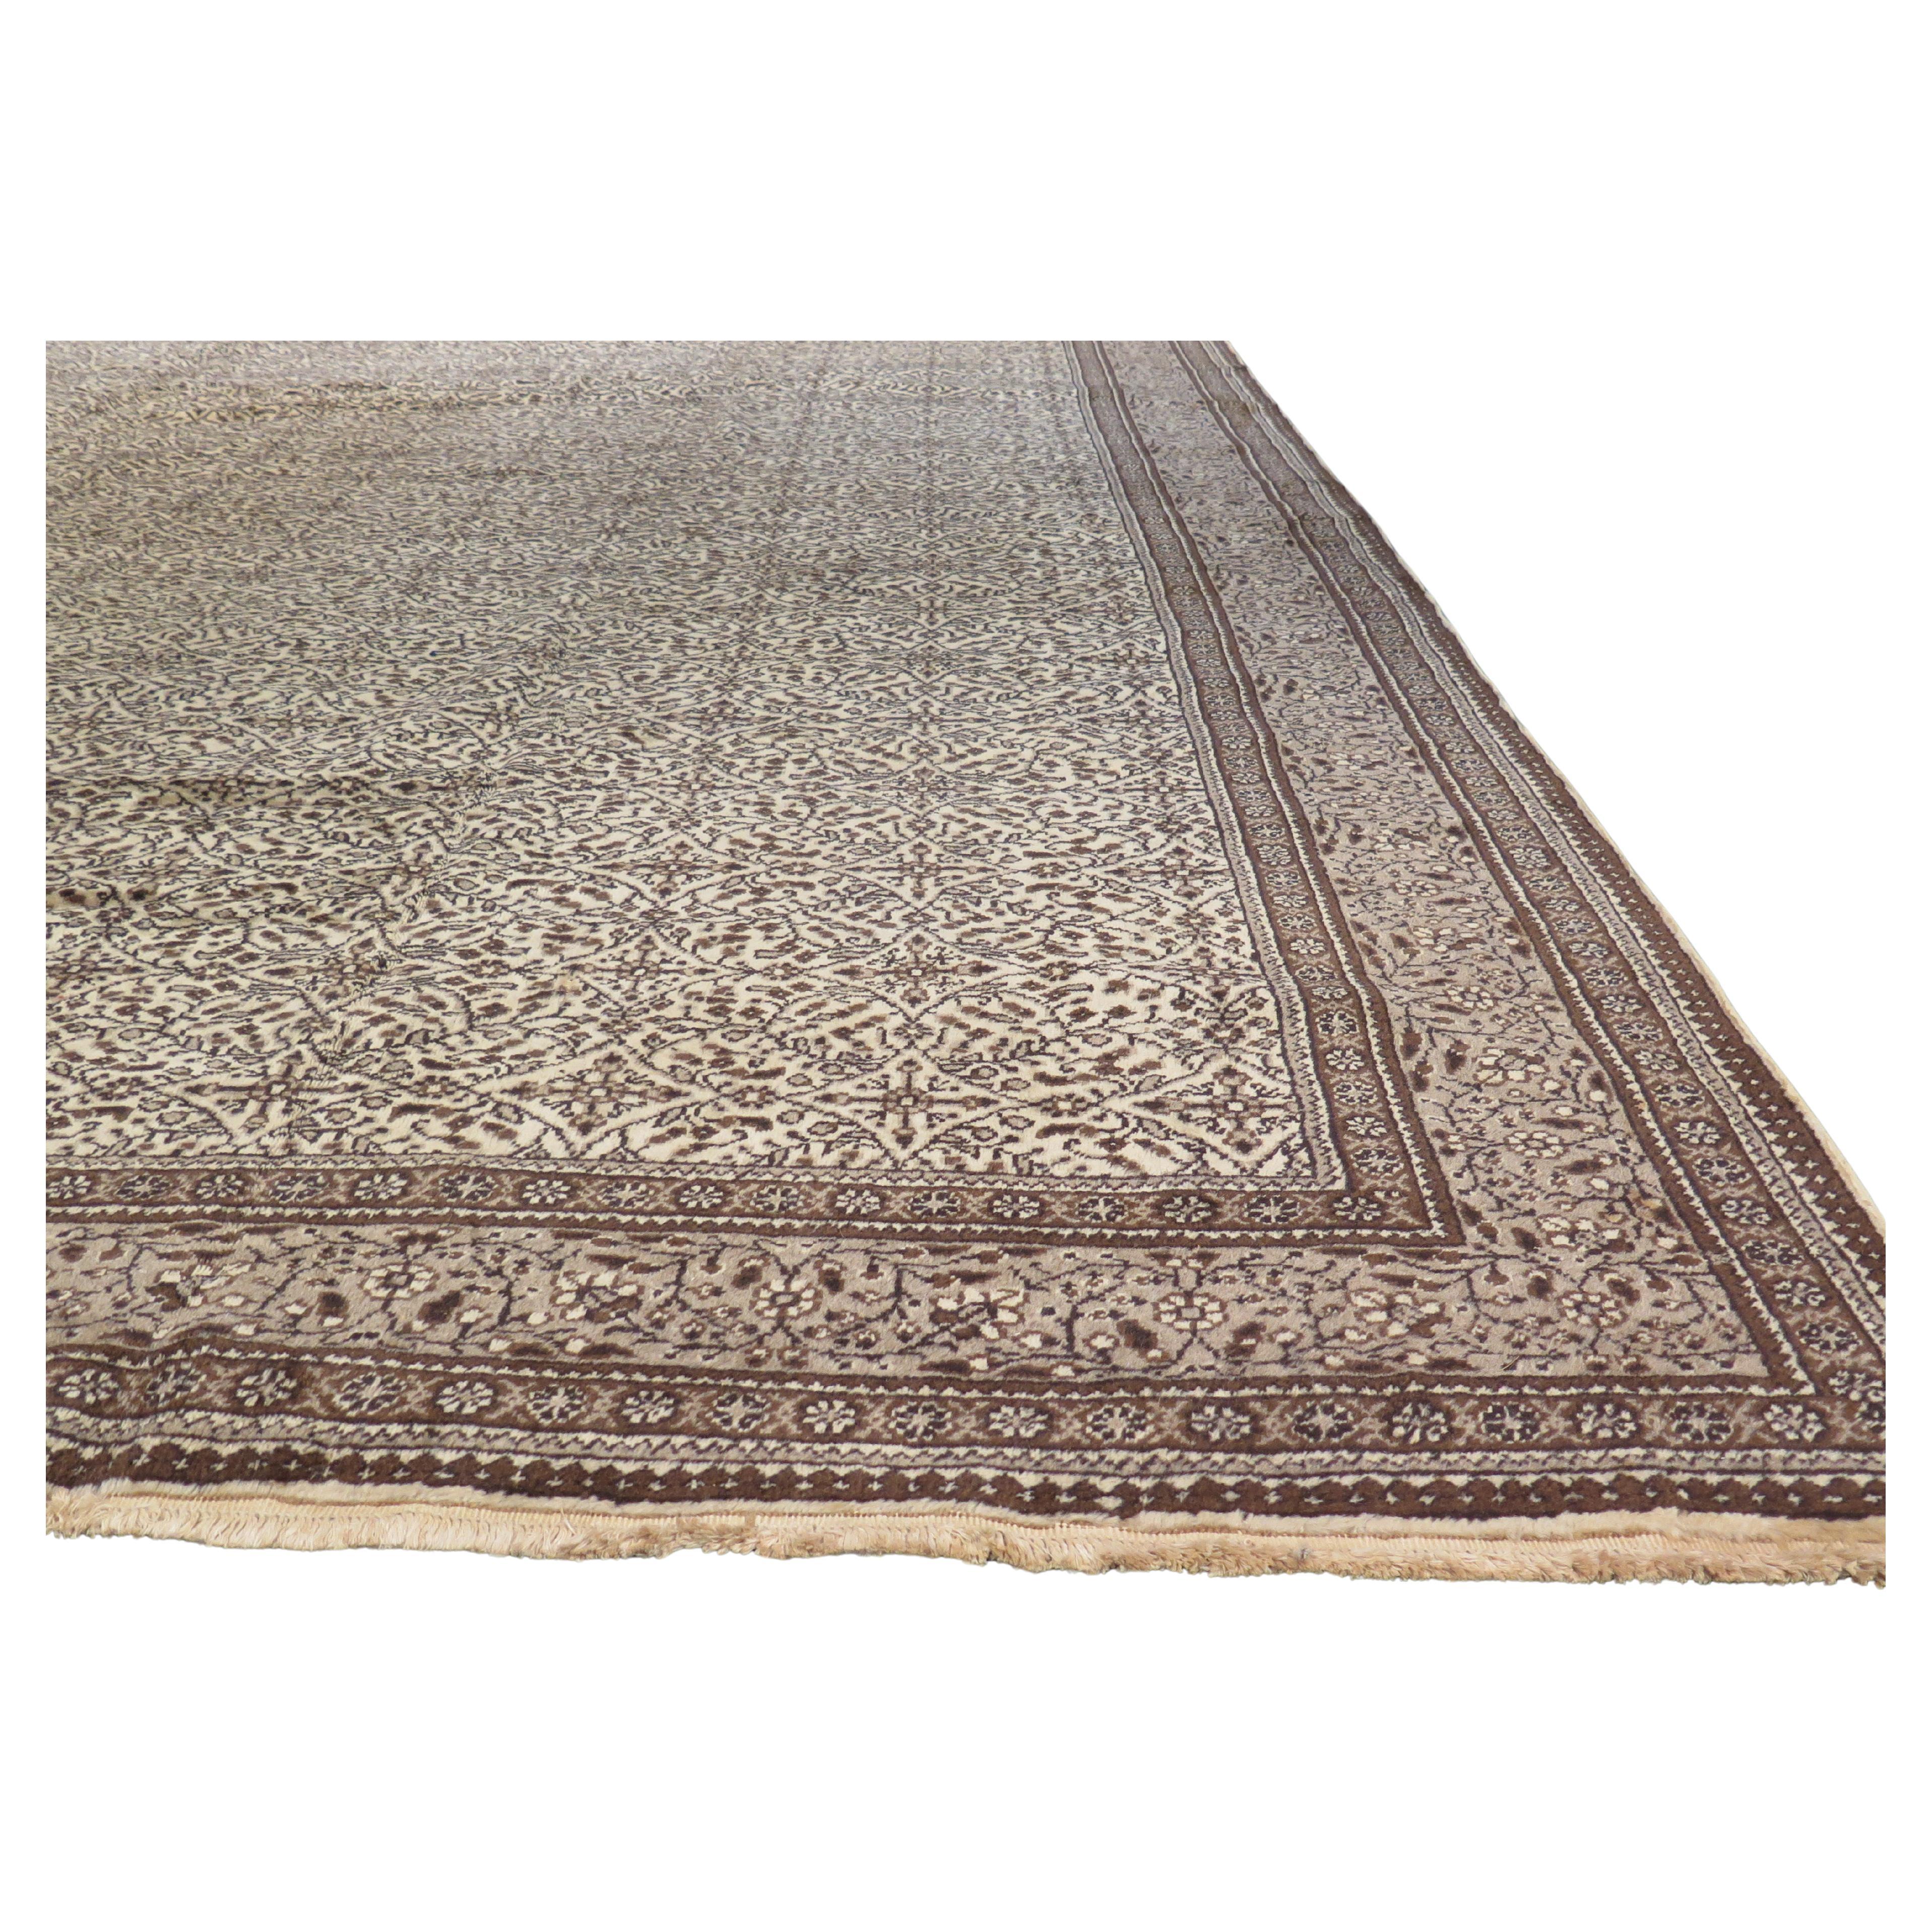 Early 20th Century Anatolian Carpet